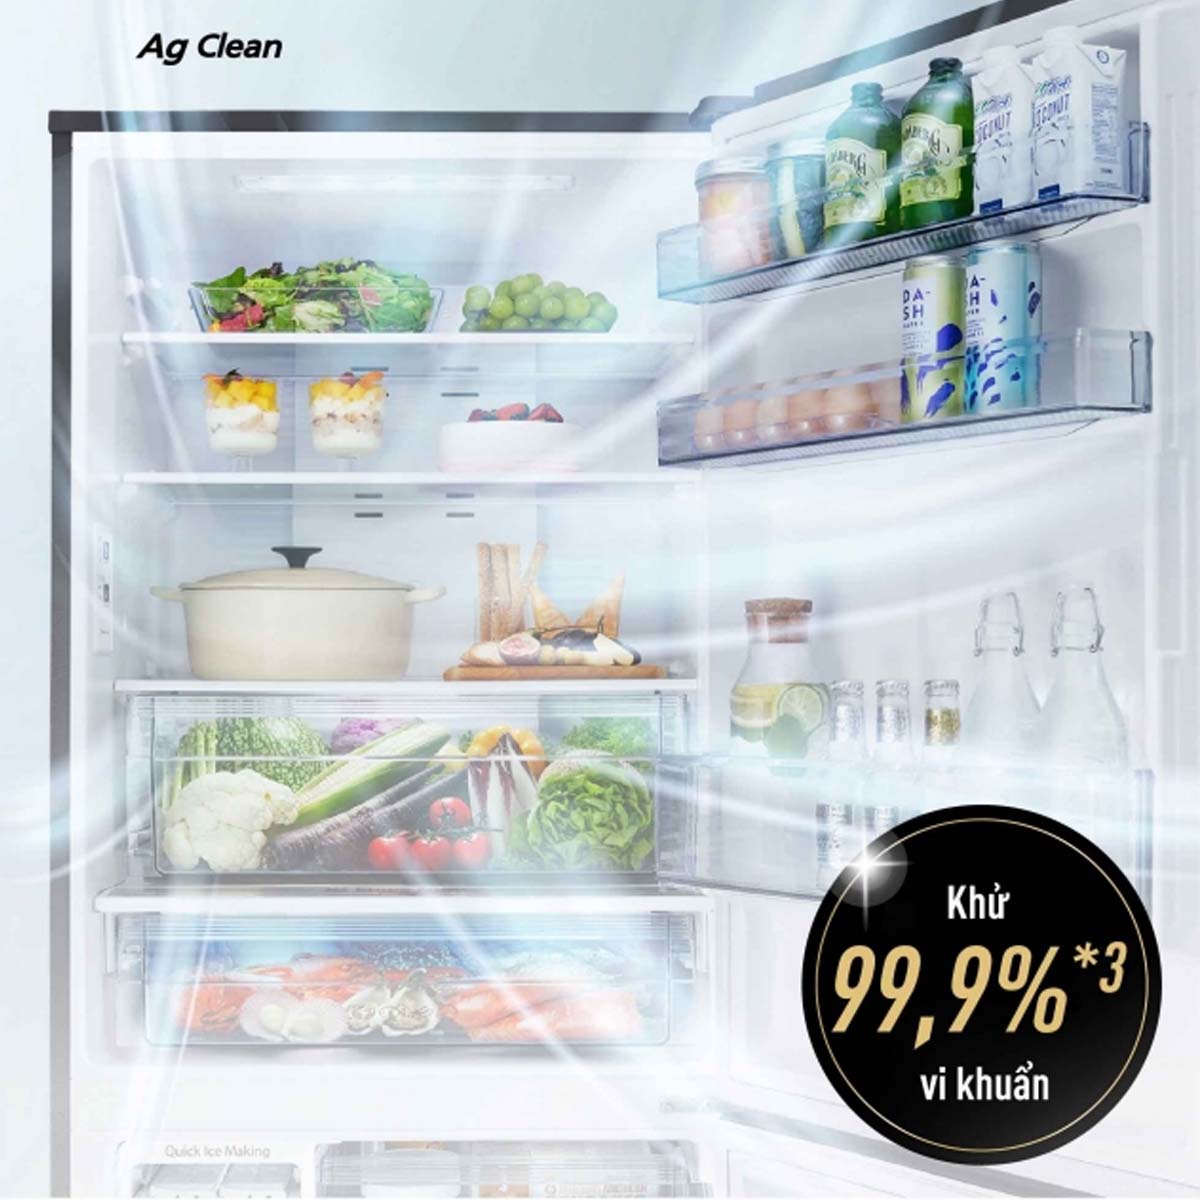 Công nghệ Ag Clean của Tủ Lạnh NR-BX421WGKV loại bỏ 99.99% vi khuẩn